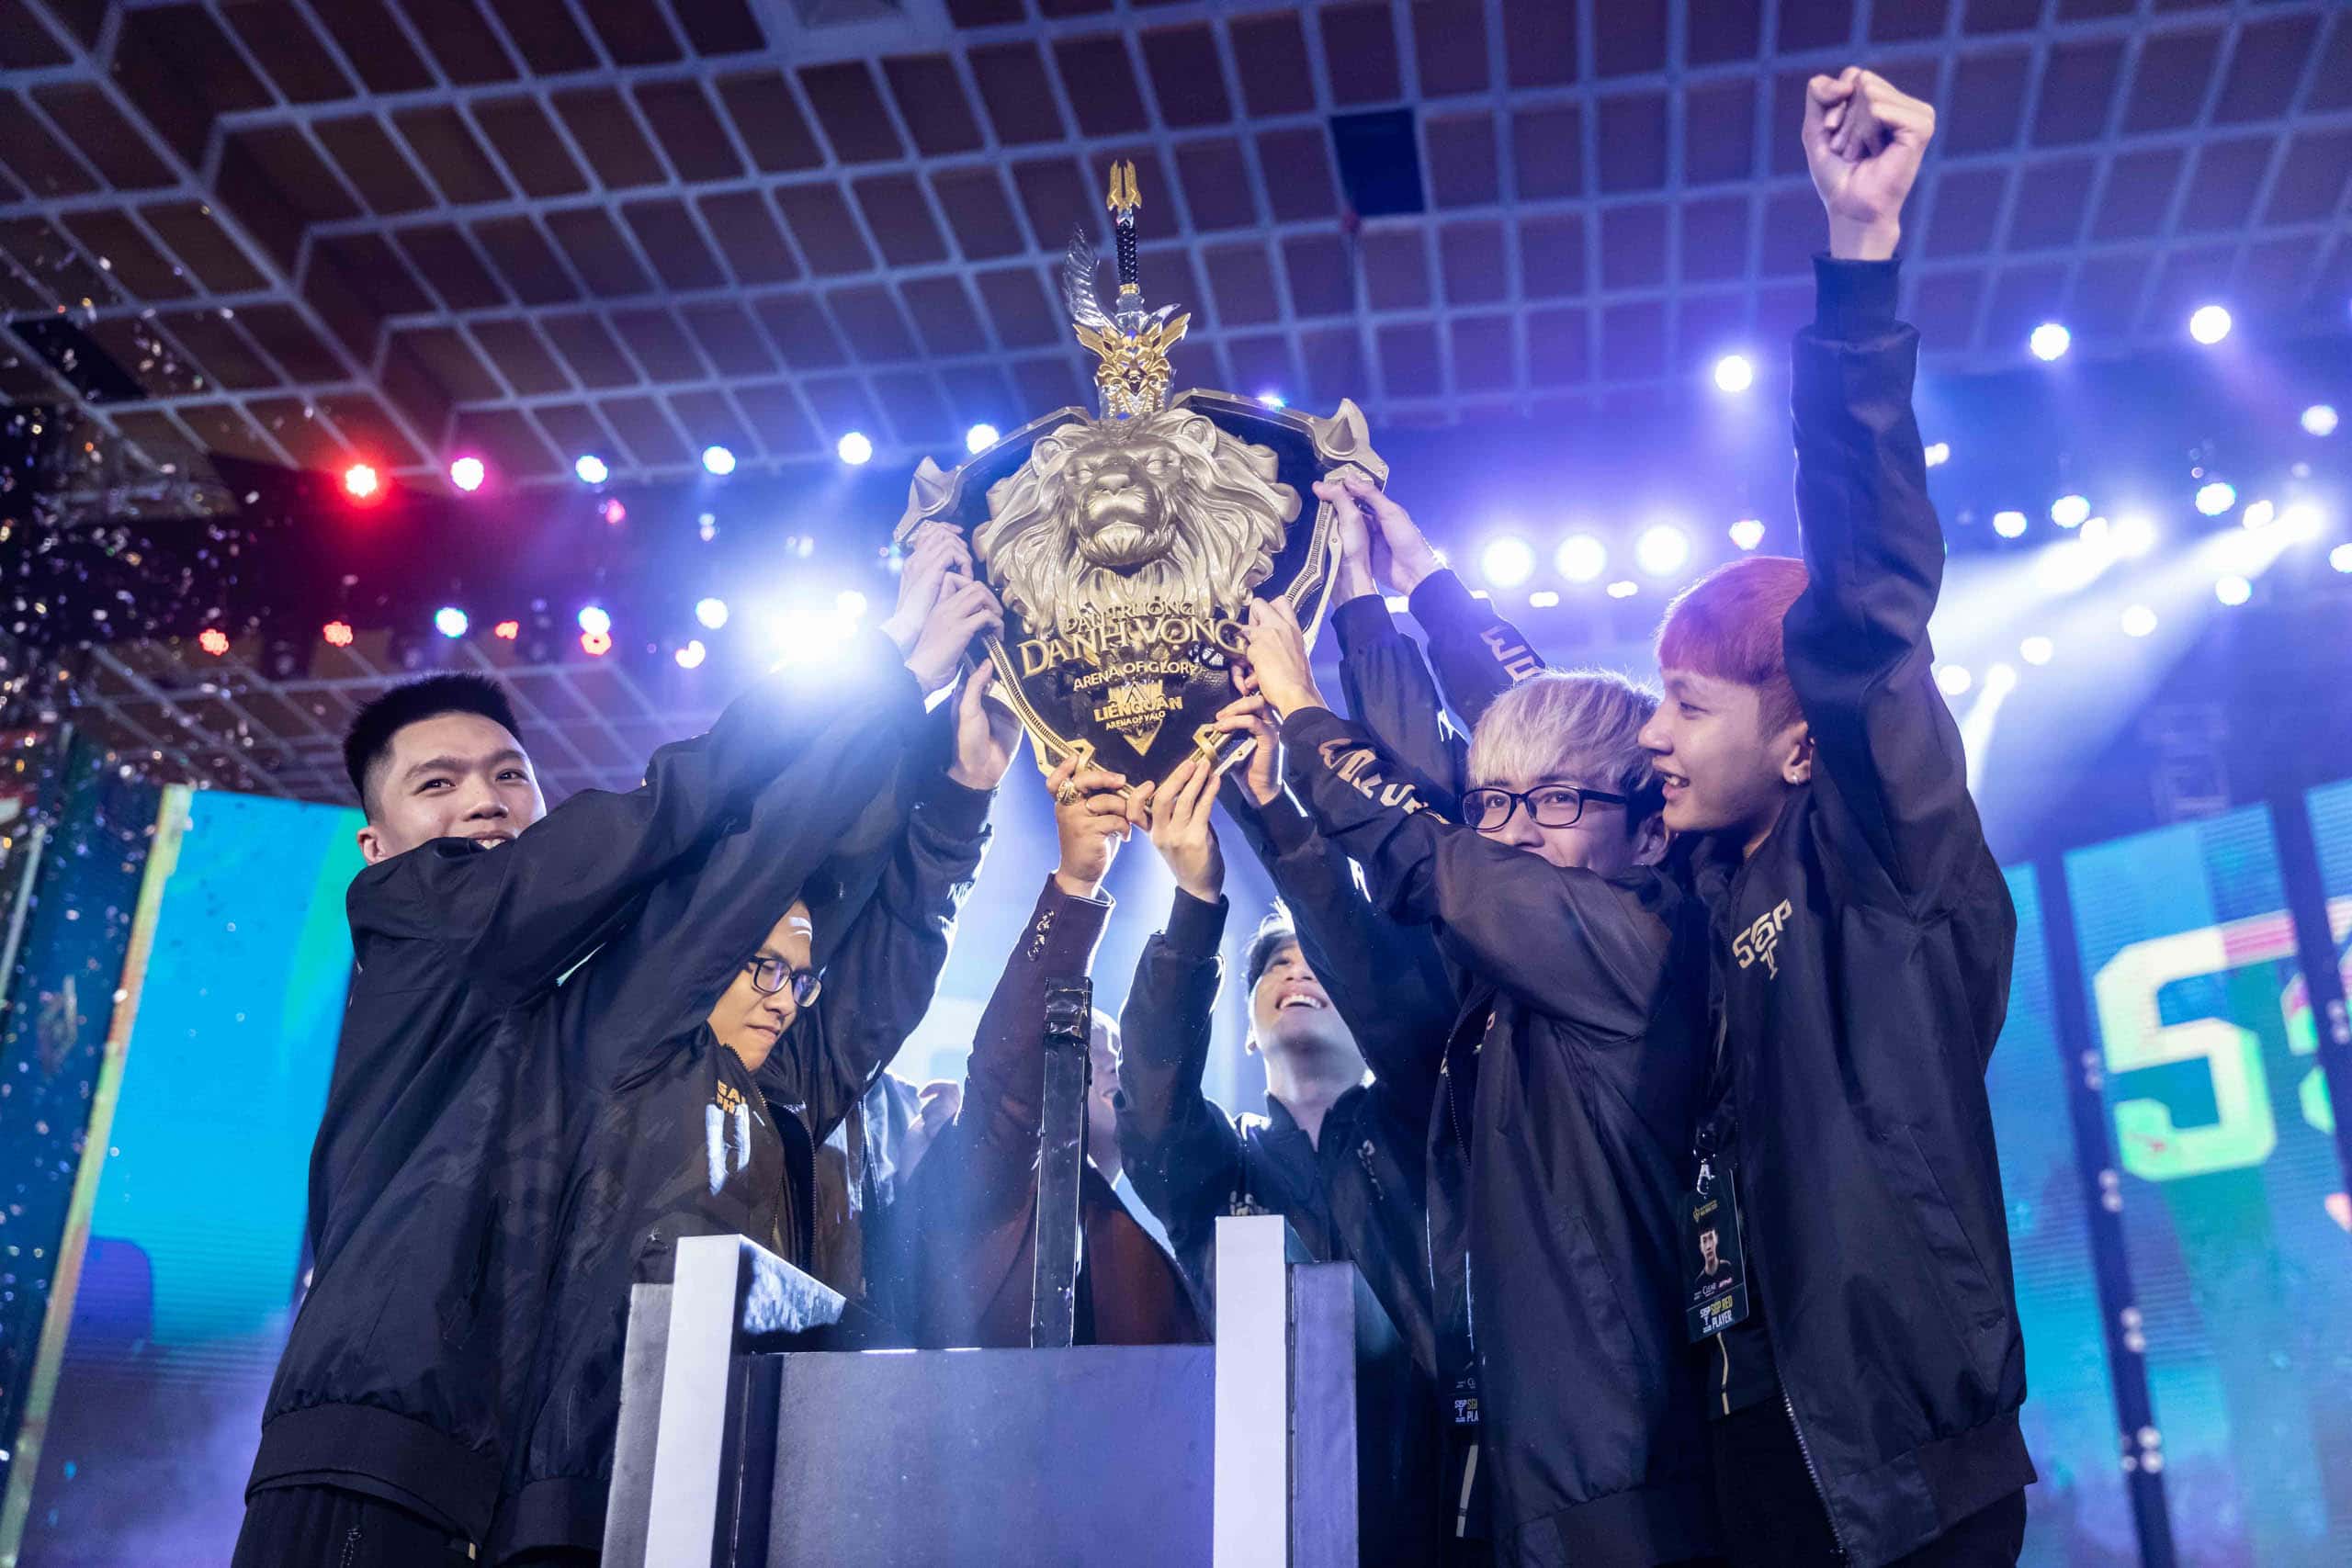 Chiến thắng thuyết phục trước Box Gaming, Saigon Phantom trở thành nhà vô địch Đấu Trường Danh Vọng Mùa Đông 2020